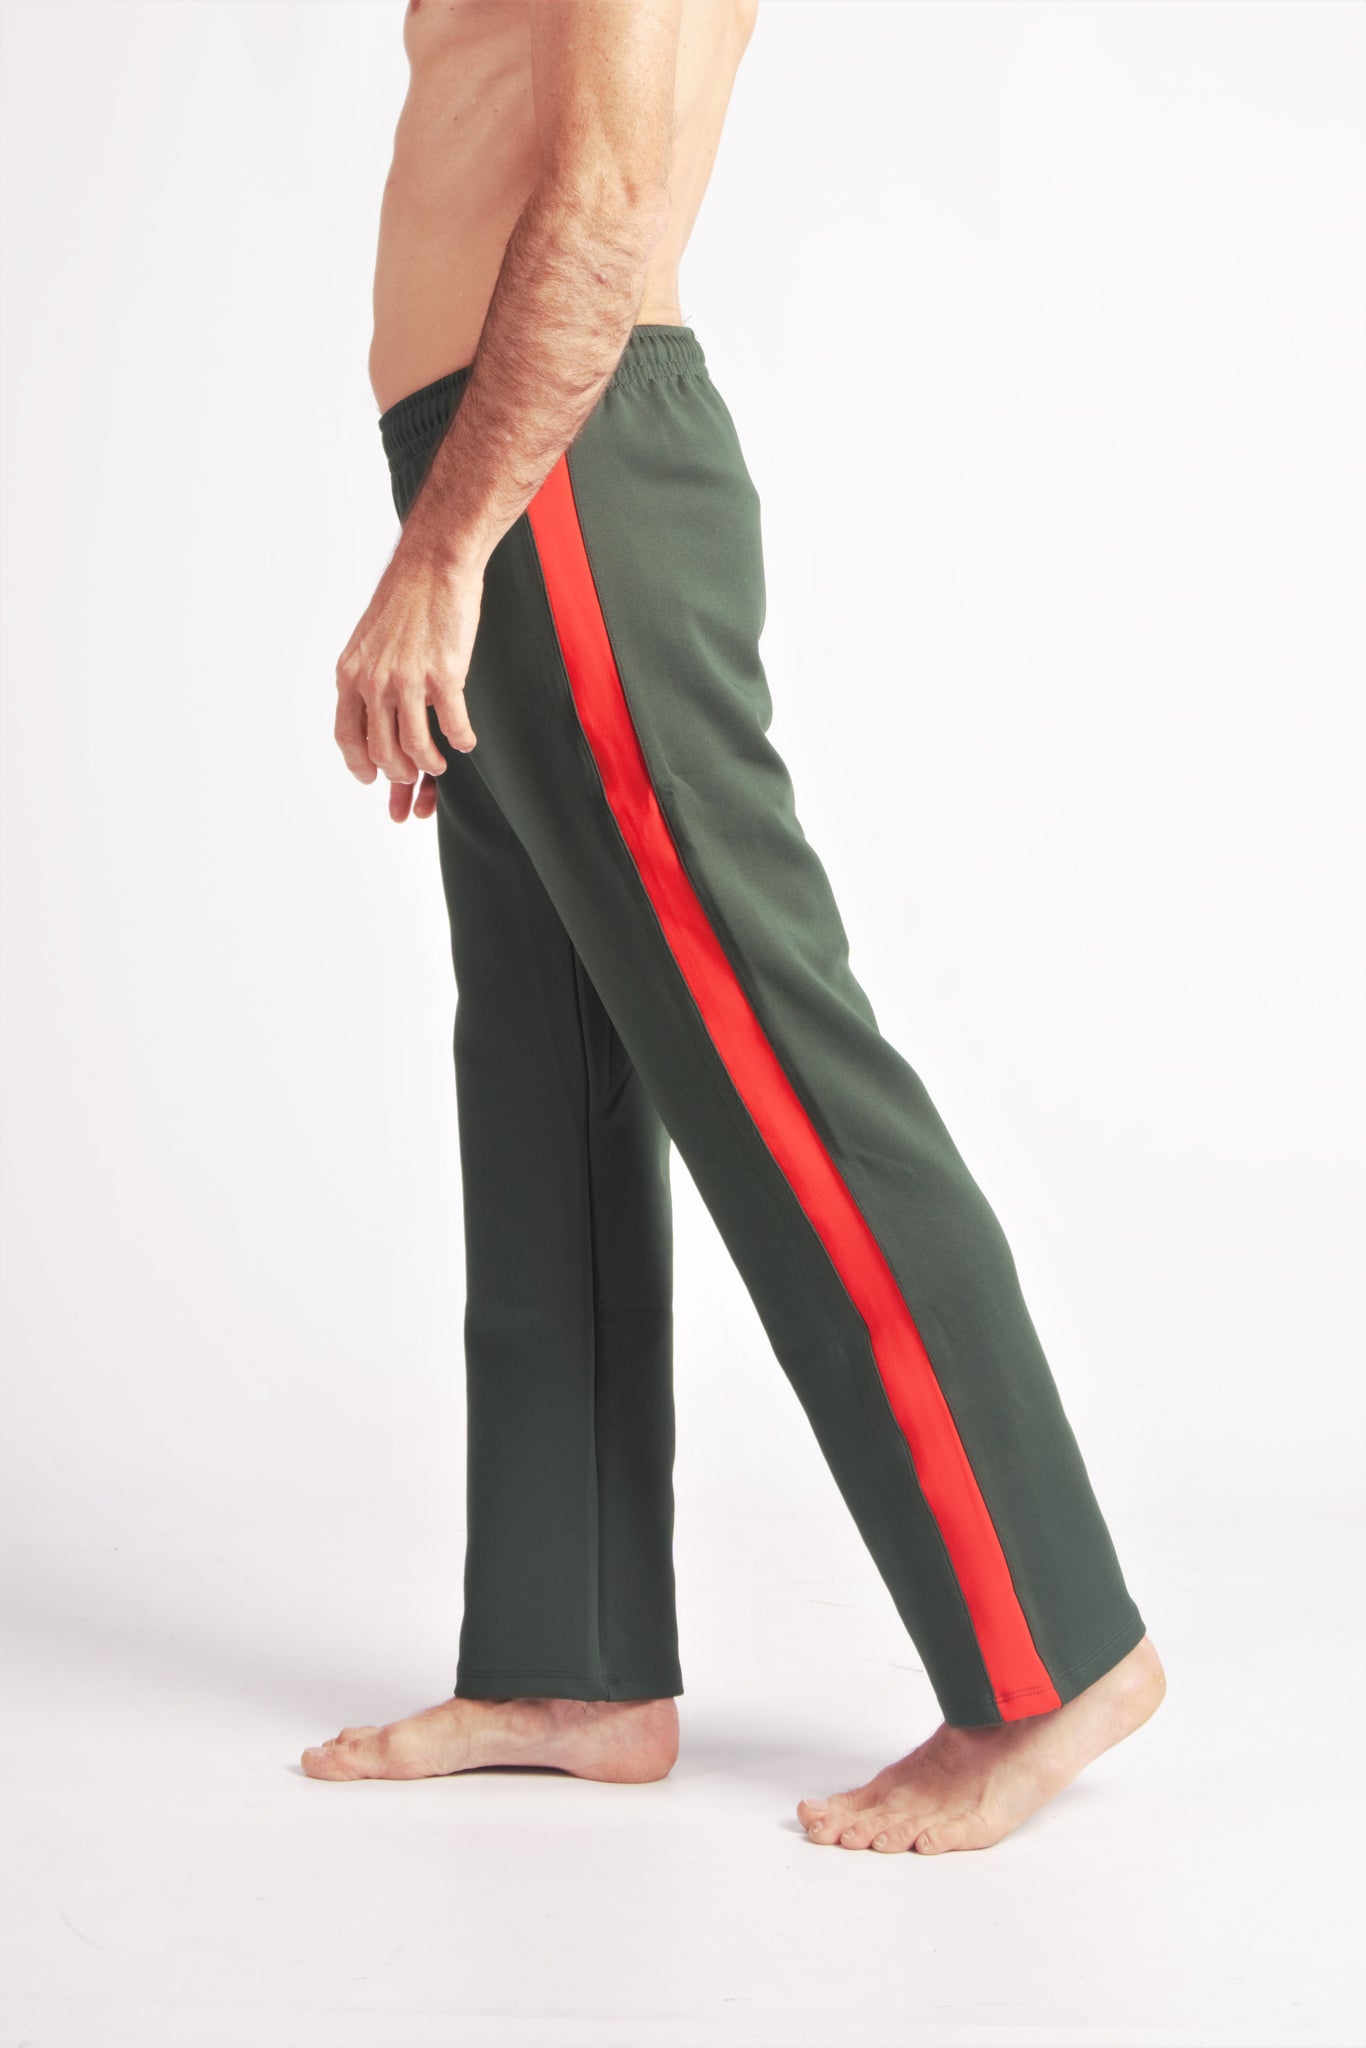 Flying Dance Pants es un pantalón de danza técnico unisex para entrenamiento de baile, danza contemporánea, acrobacia, yoga, artes marciales, pilates y cualquier disciplina vinculada al movimiento. Ideal para el trabajo de suelo, con un tejido resistente, deslizante y super absorbente. Color Verde y Rojo